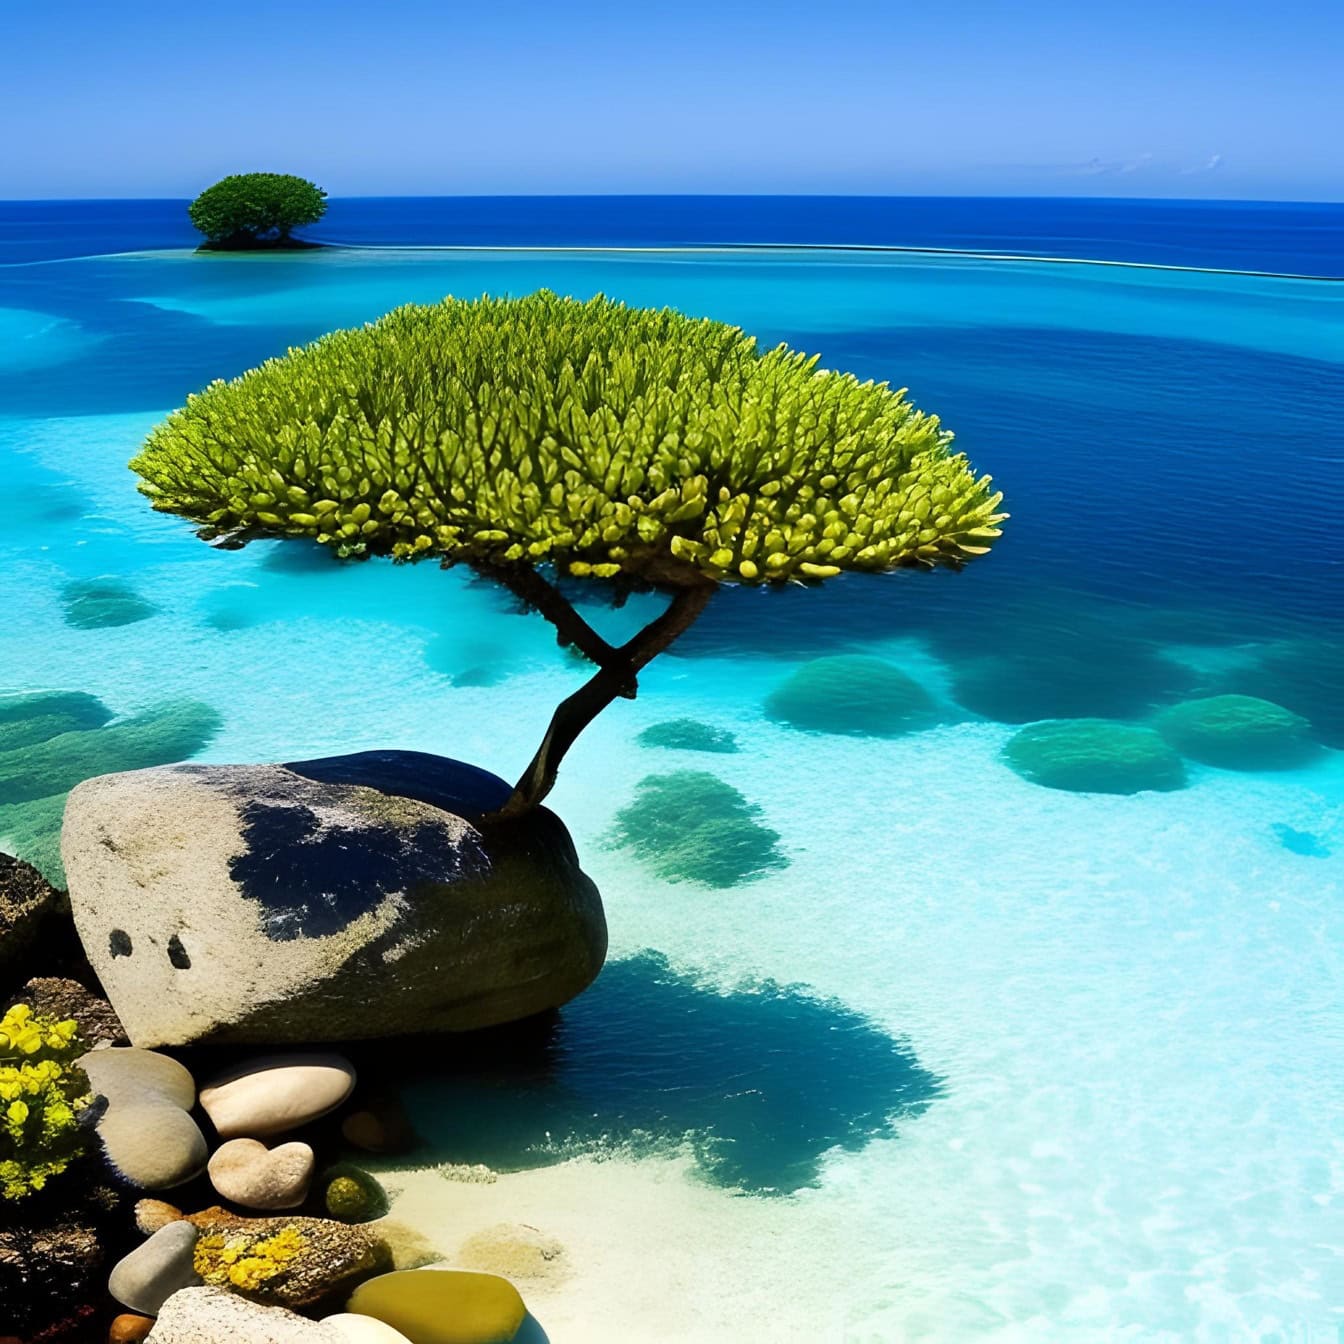 Afbeelding van een boom die op een rots aan de kust van een tropisch eiland groeit dat door transparant zeewater wordt omringd